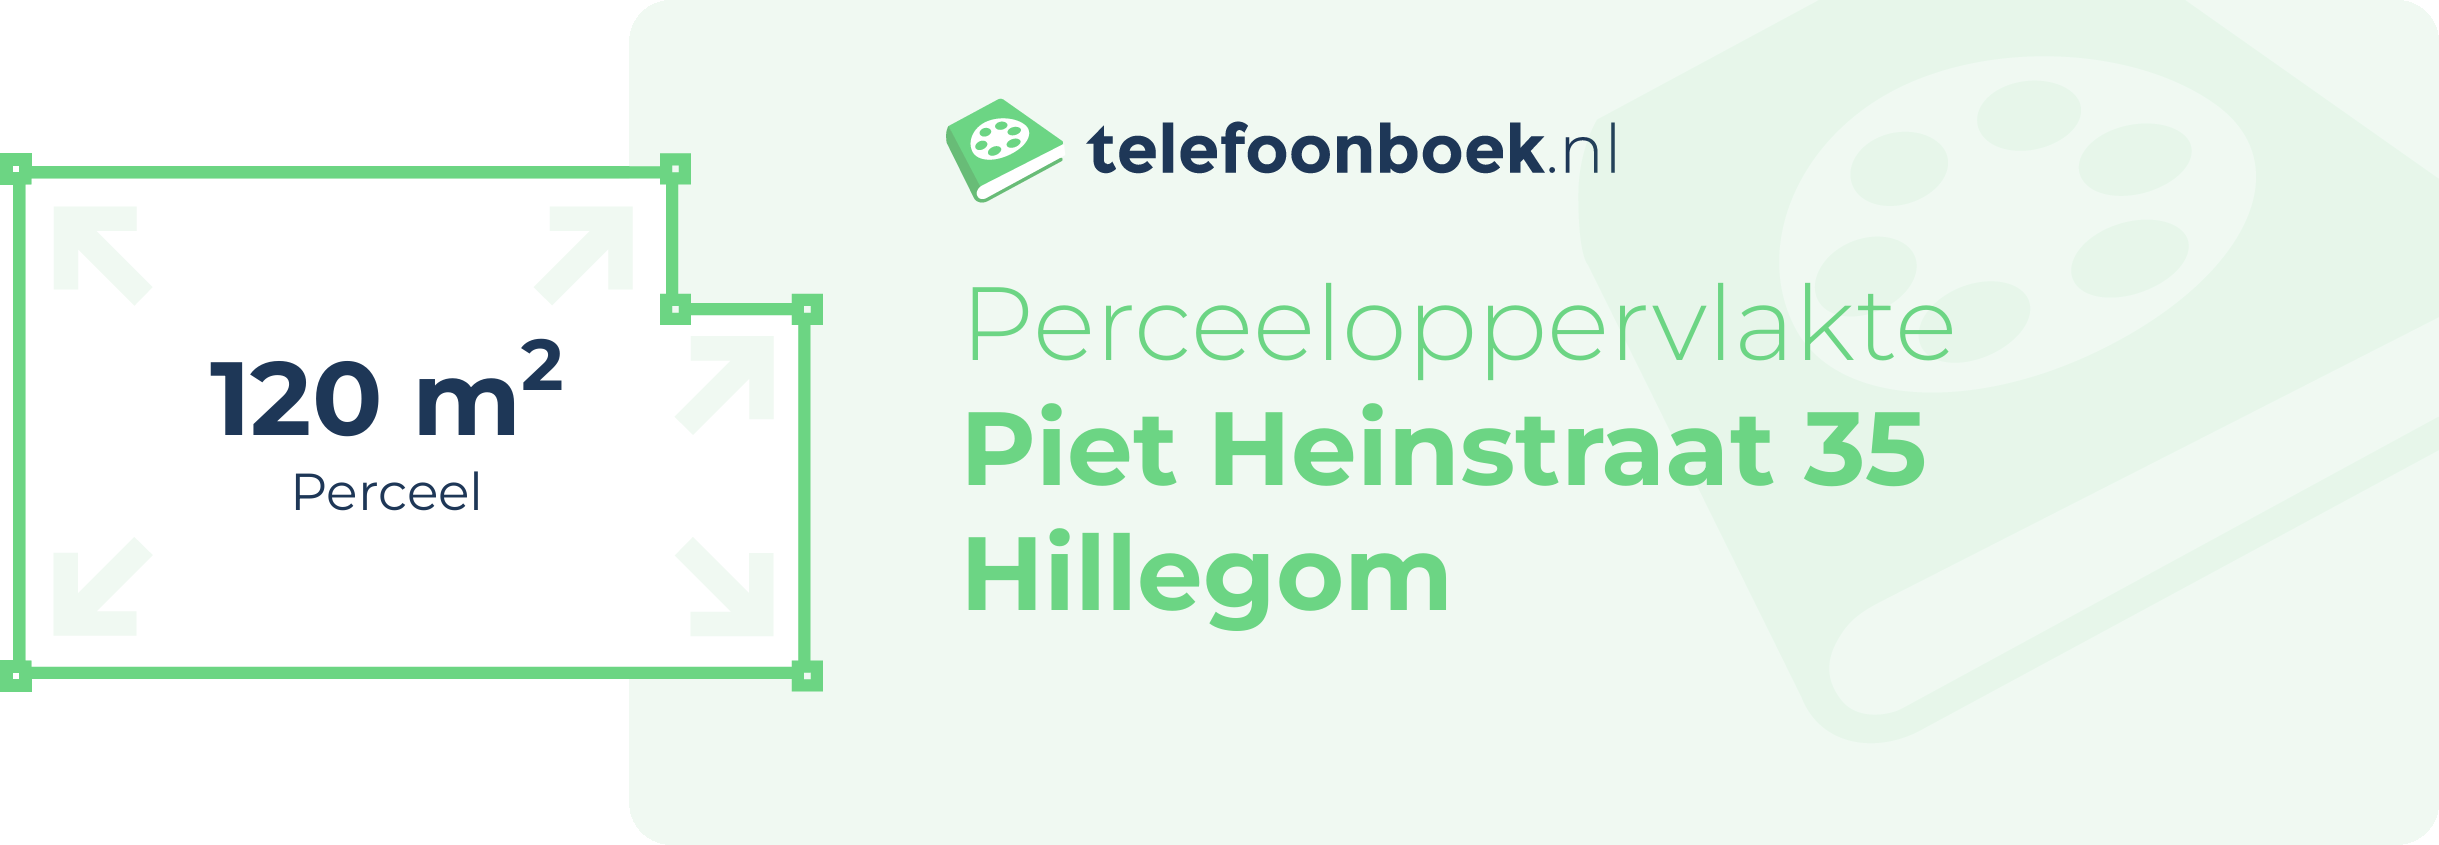 Perceeloppervlakte Piet Heinstraat 35 Hillegom